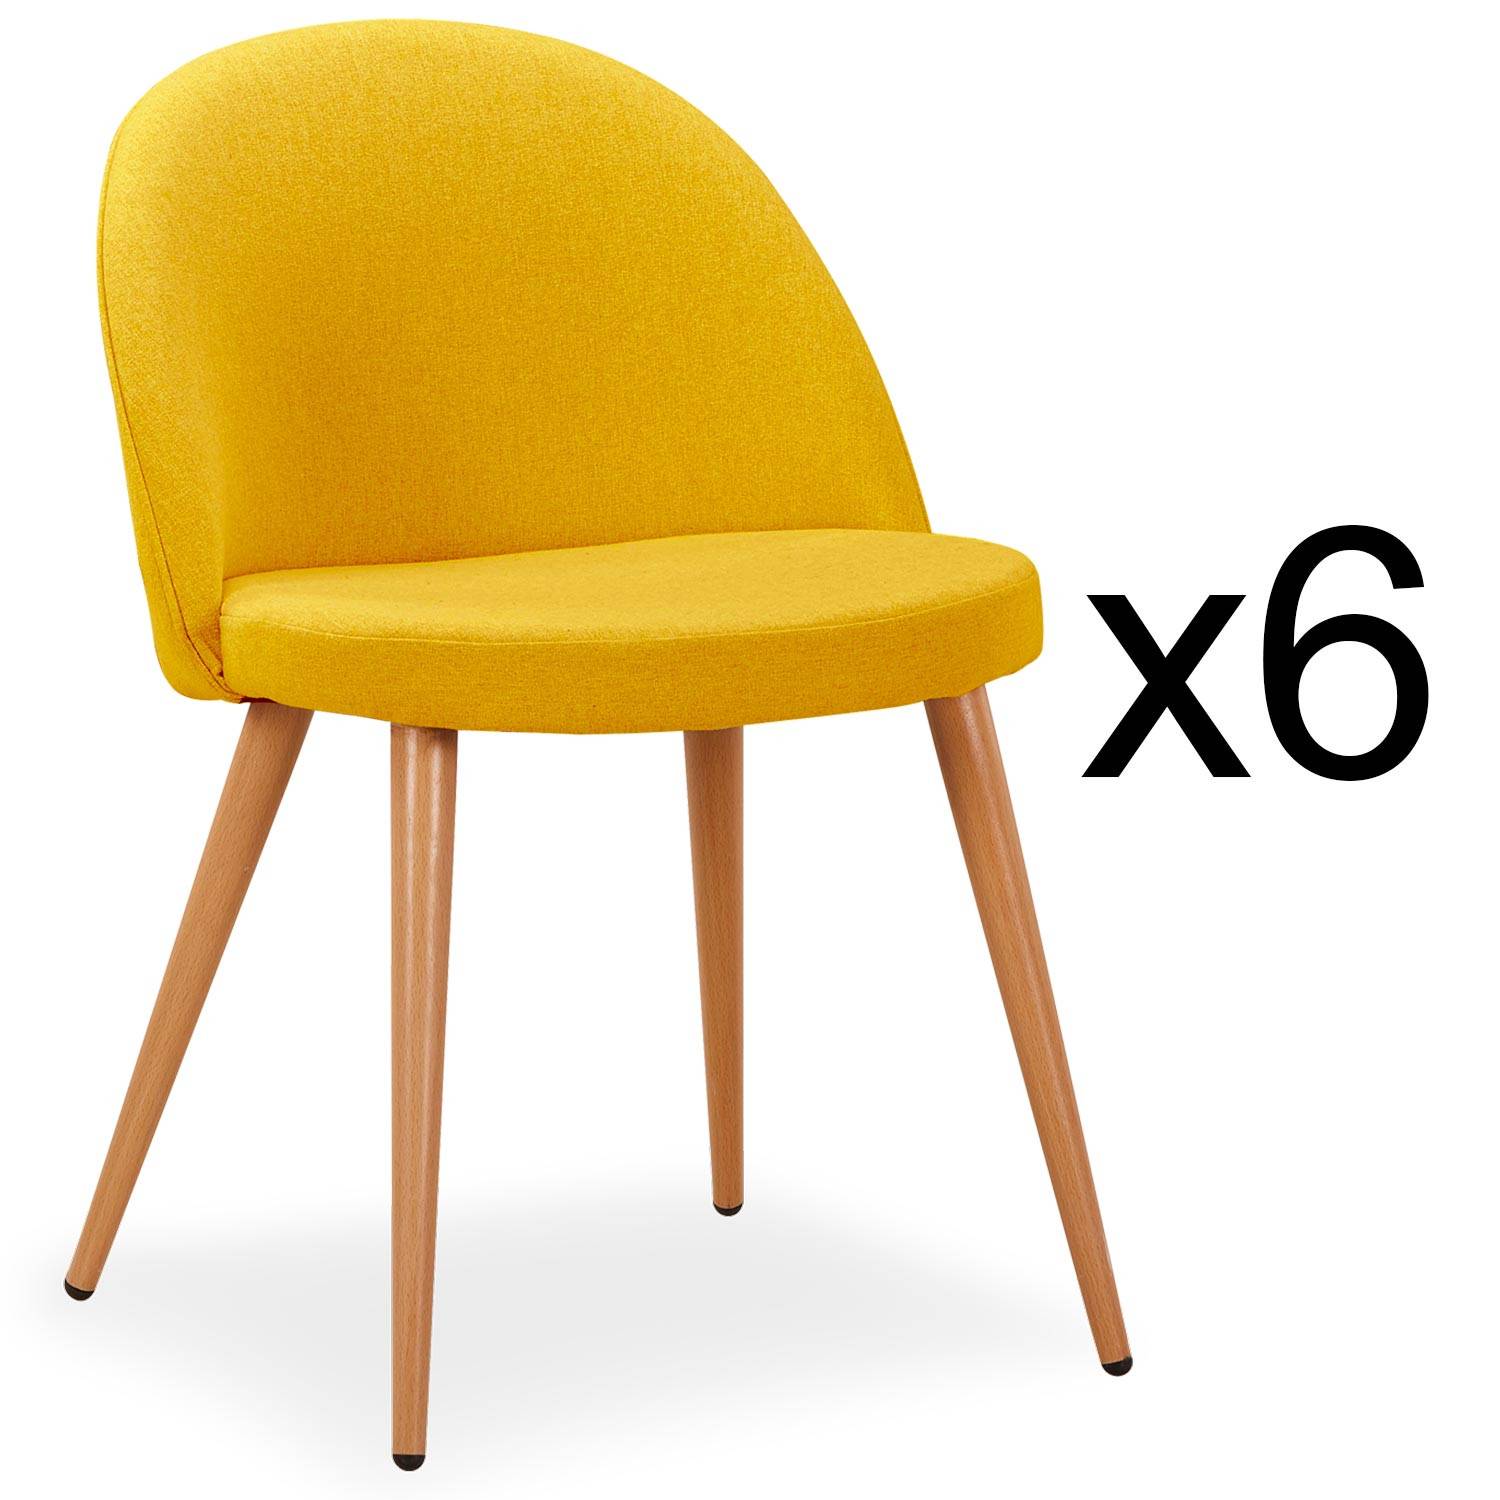 Lote de 6 sillas escandinavas Maury Tela amarilla